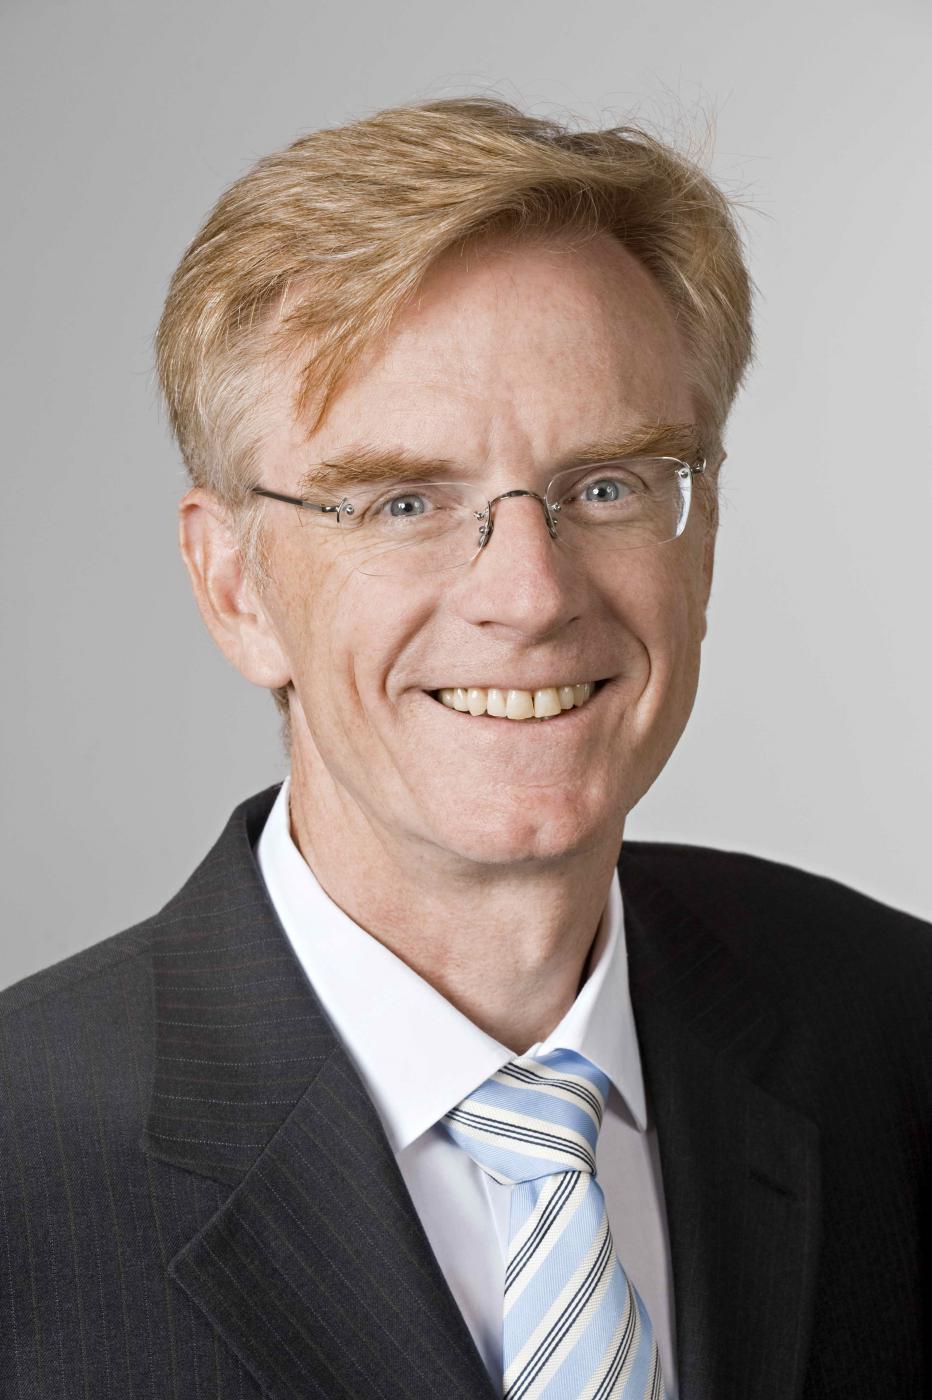 Andreas Herkersdorf, Technische Universität München, DE